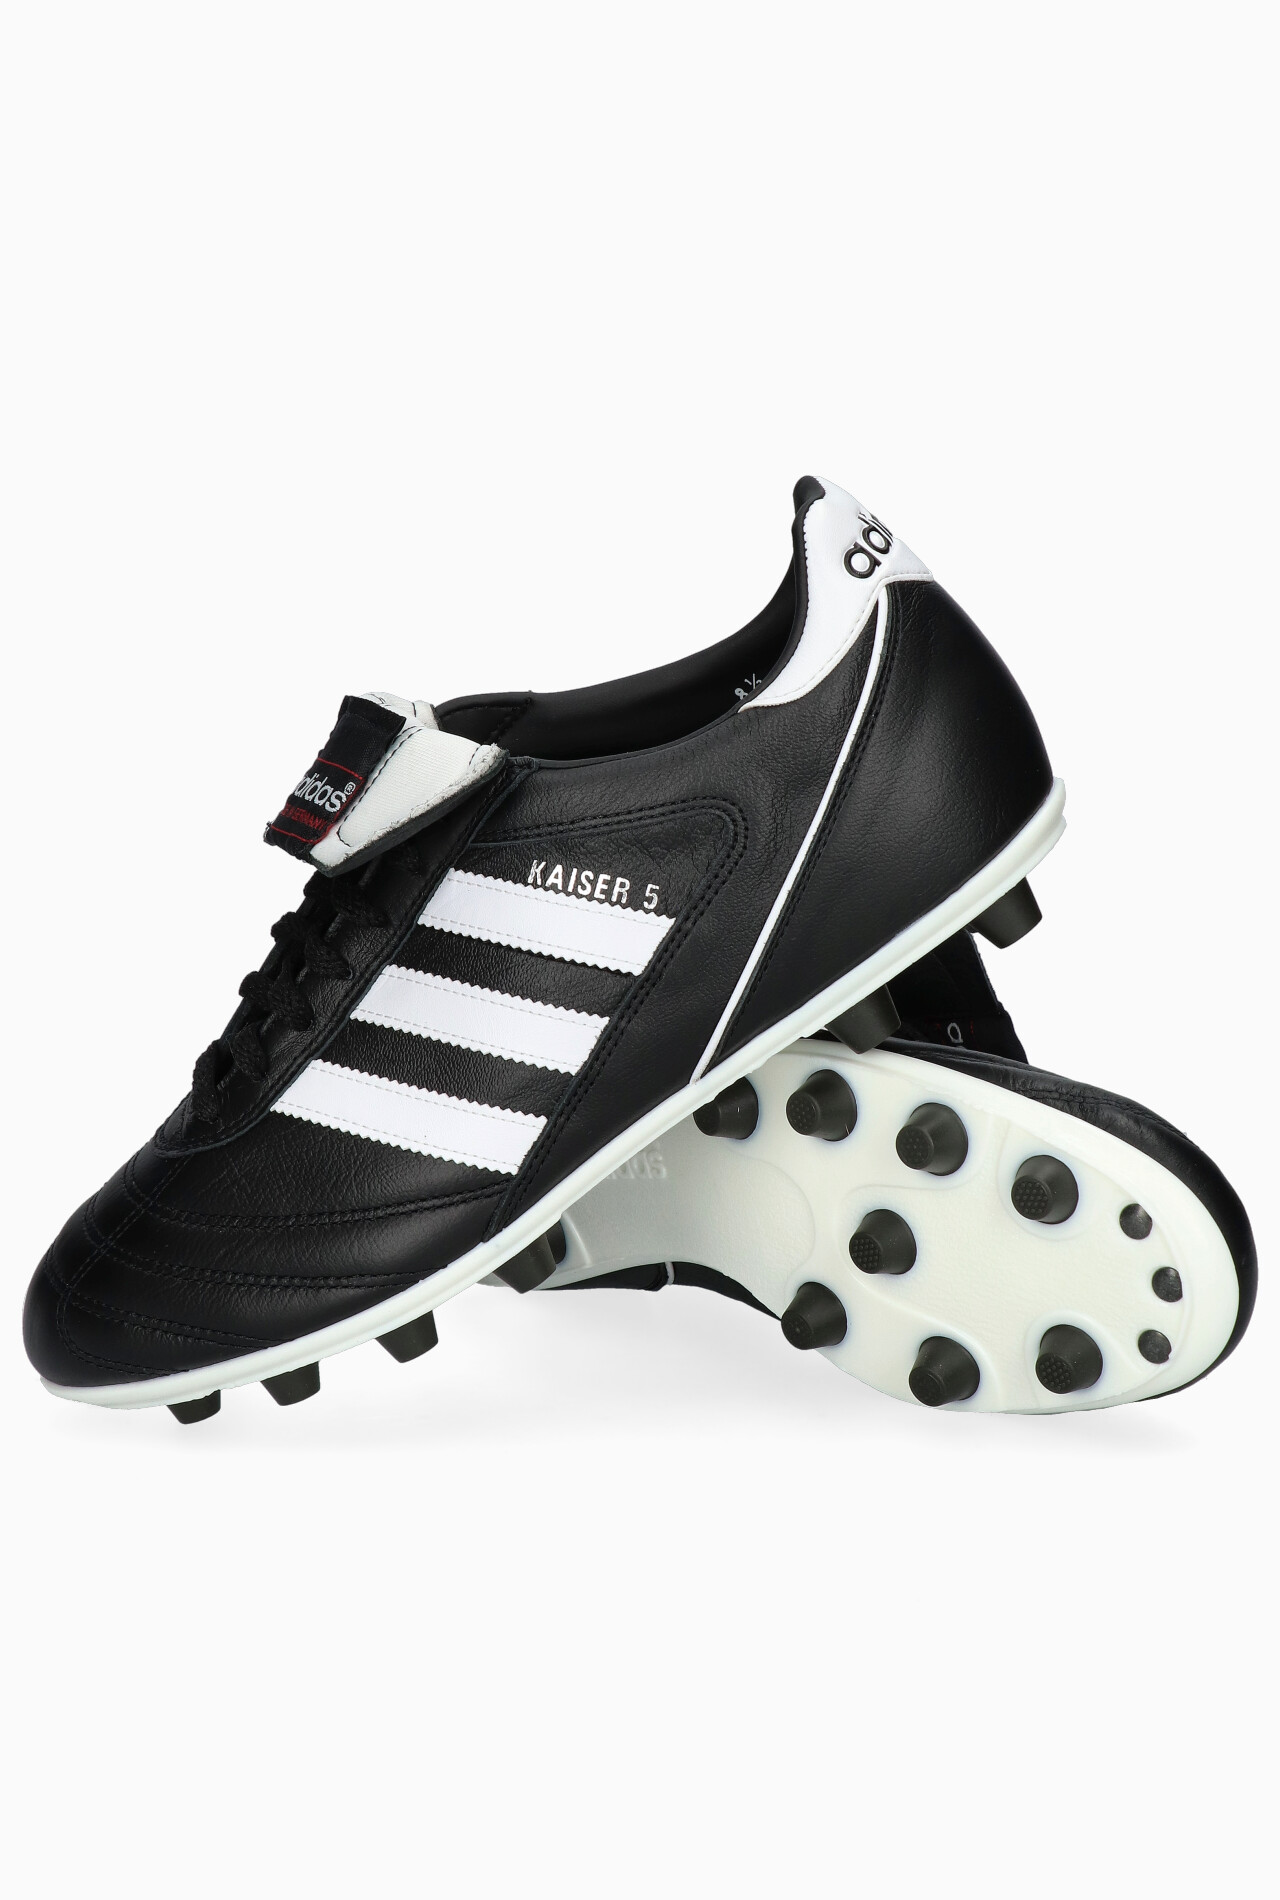 adidas Kaiser 5 Liga | R-GOL.com - boots & equipment